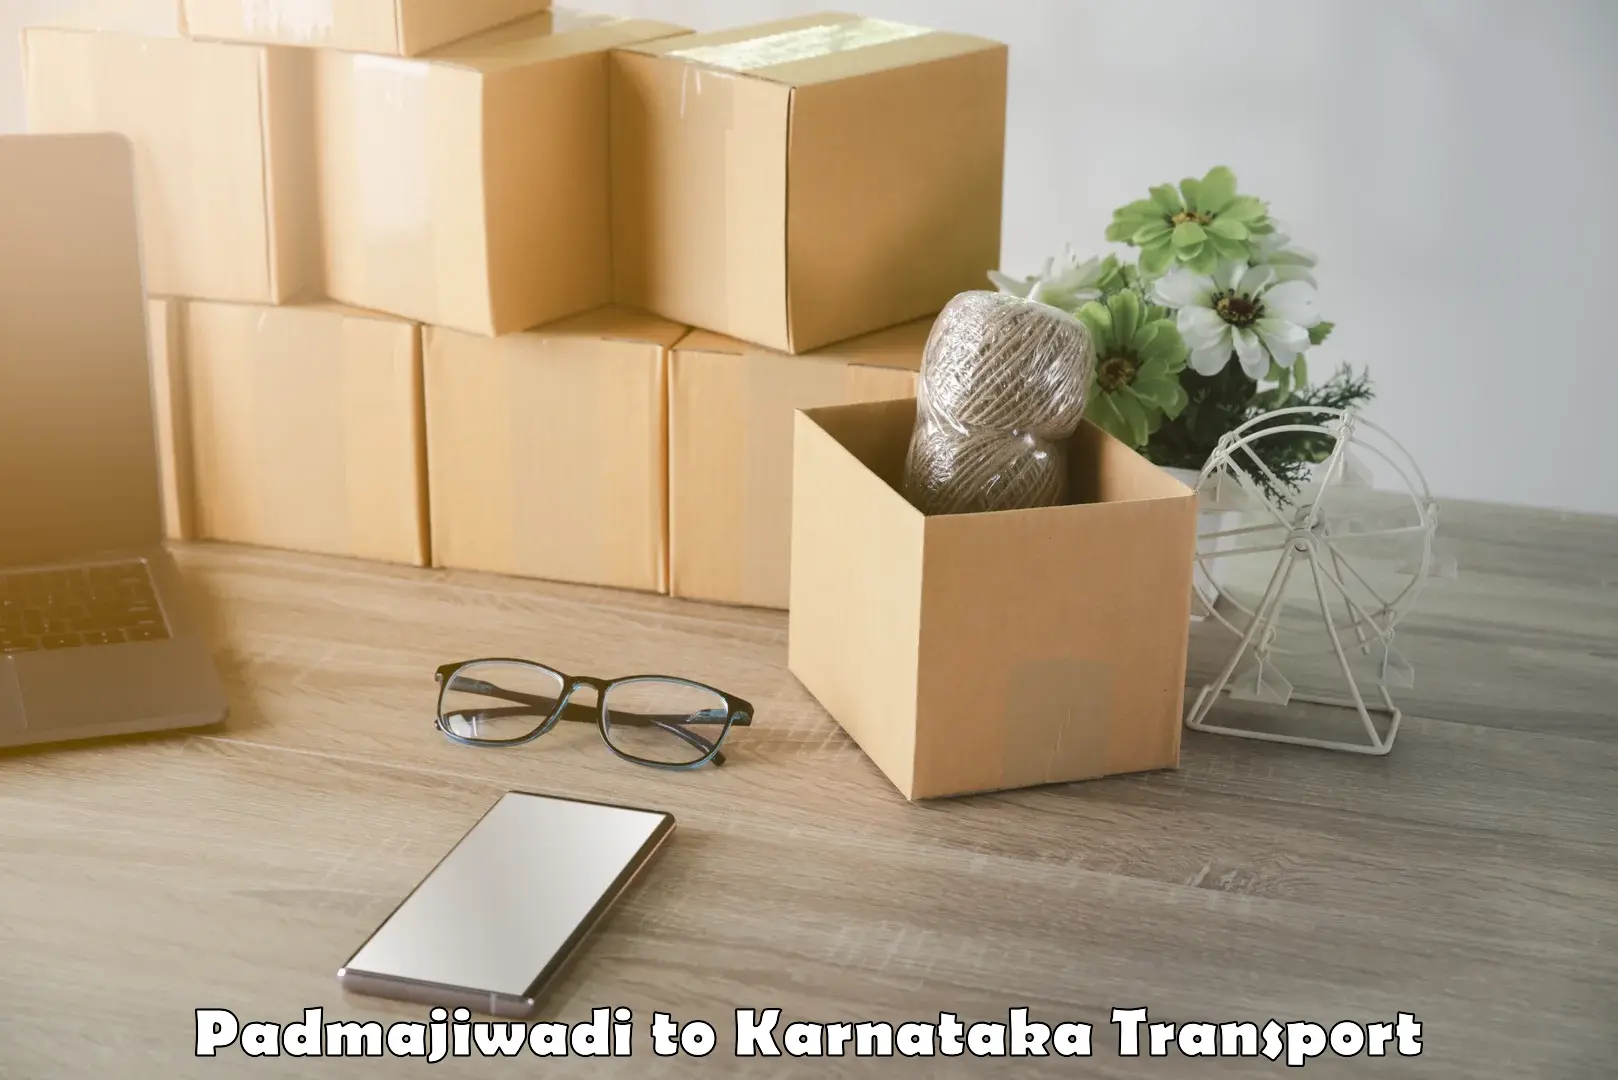 Online transport service Padmajiwadi to Yelburga